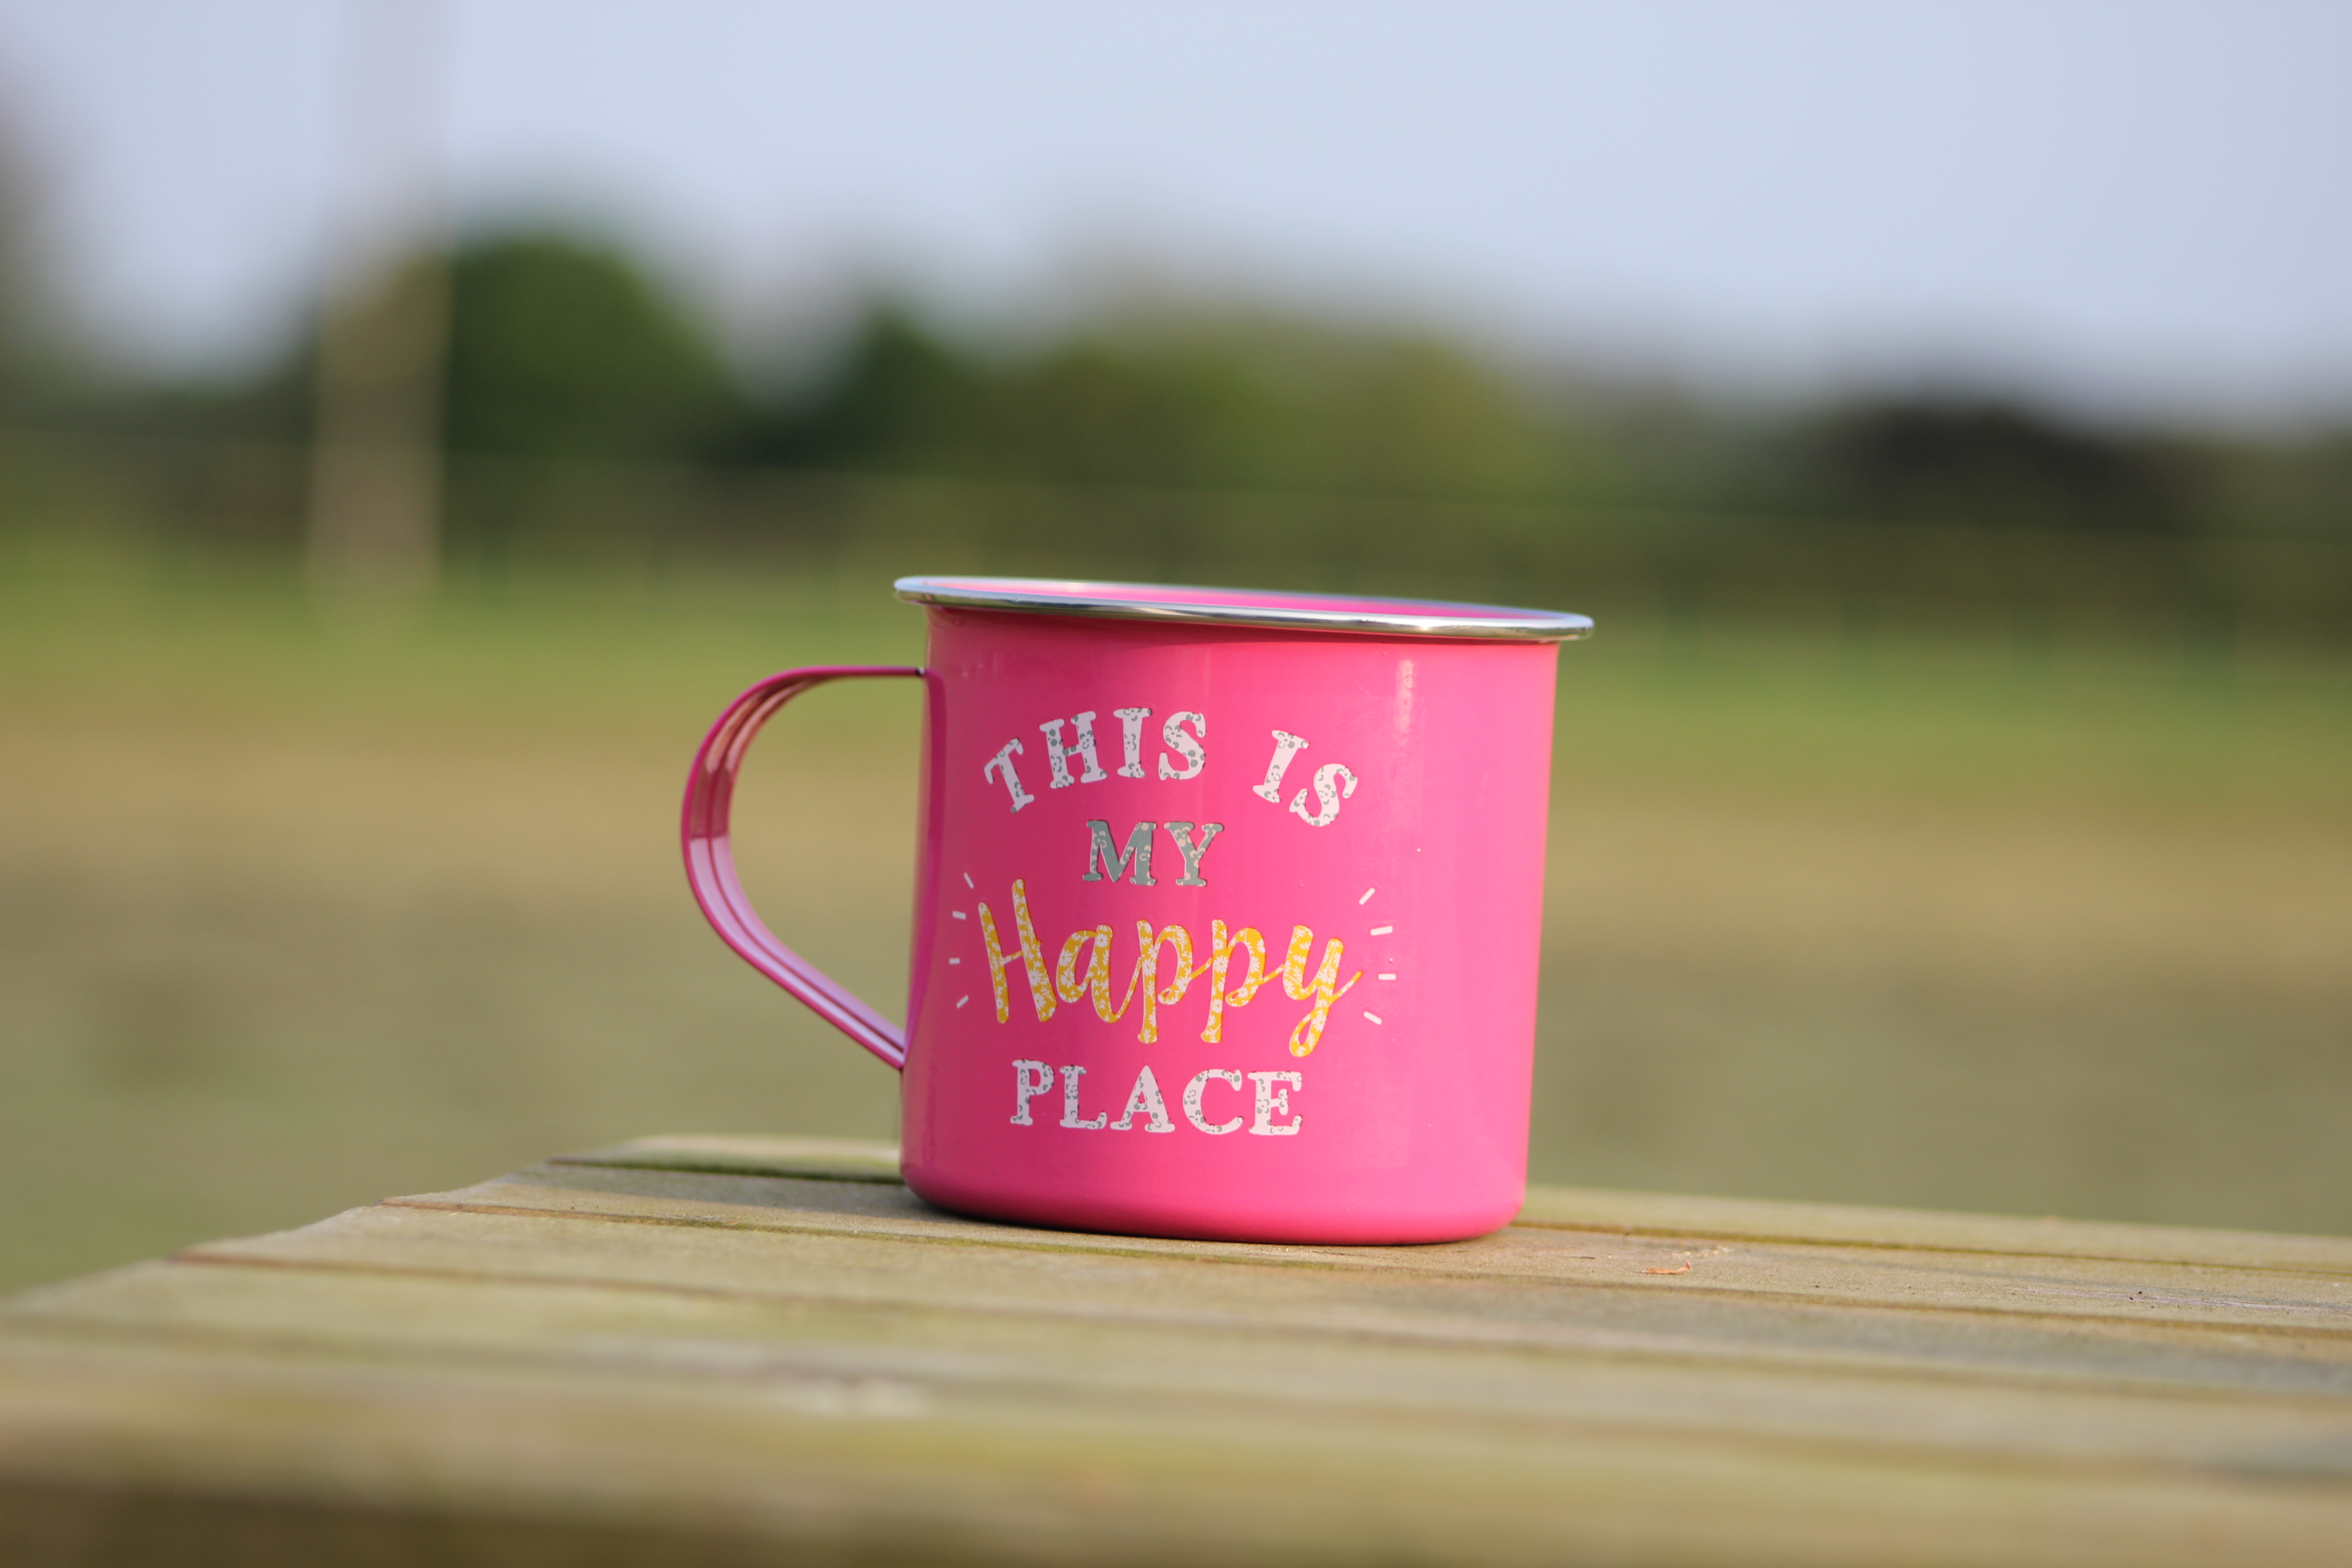 Happy place camping mug